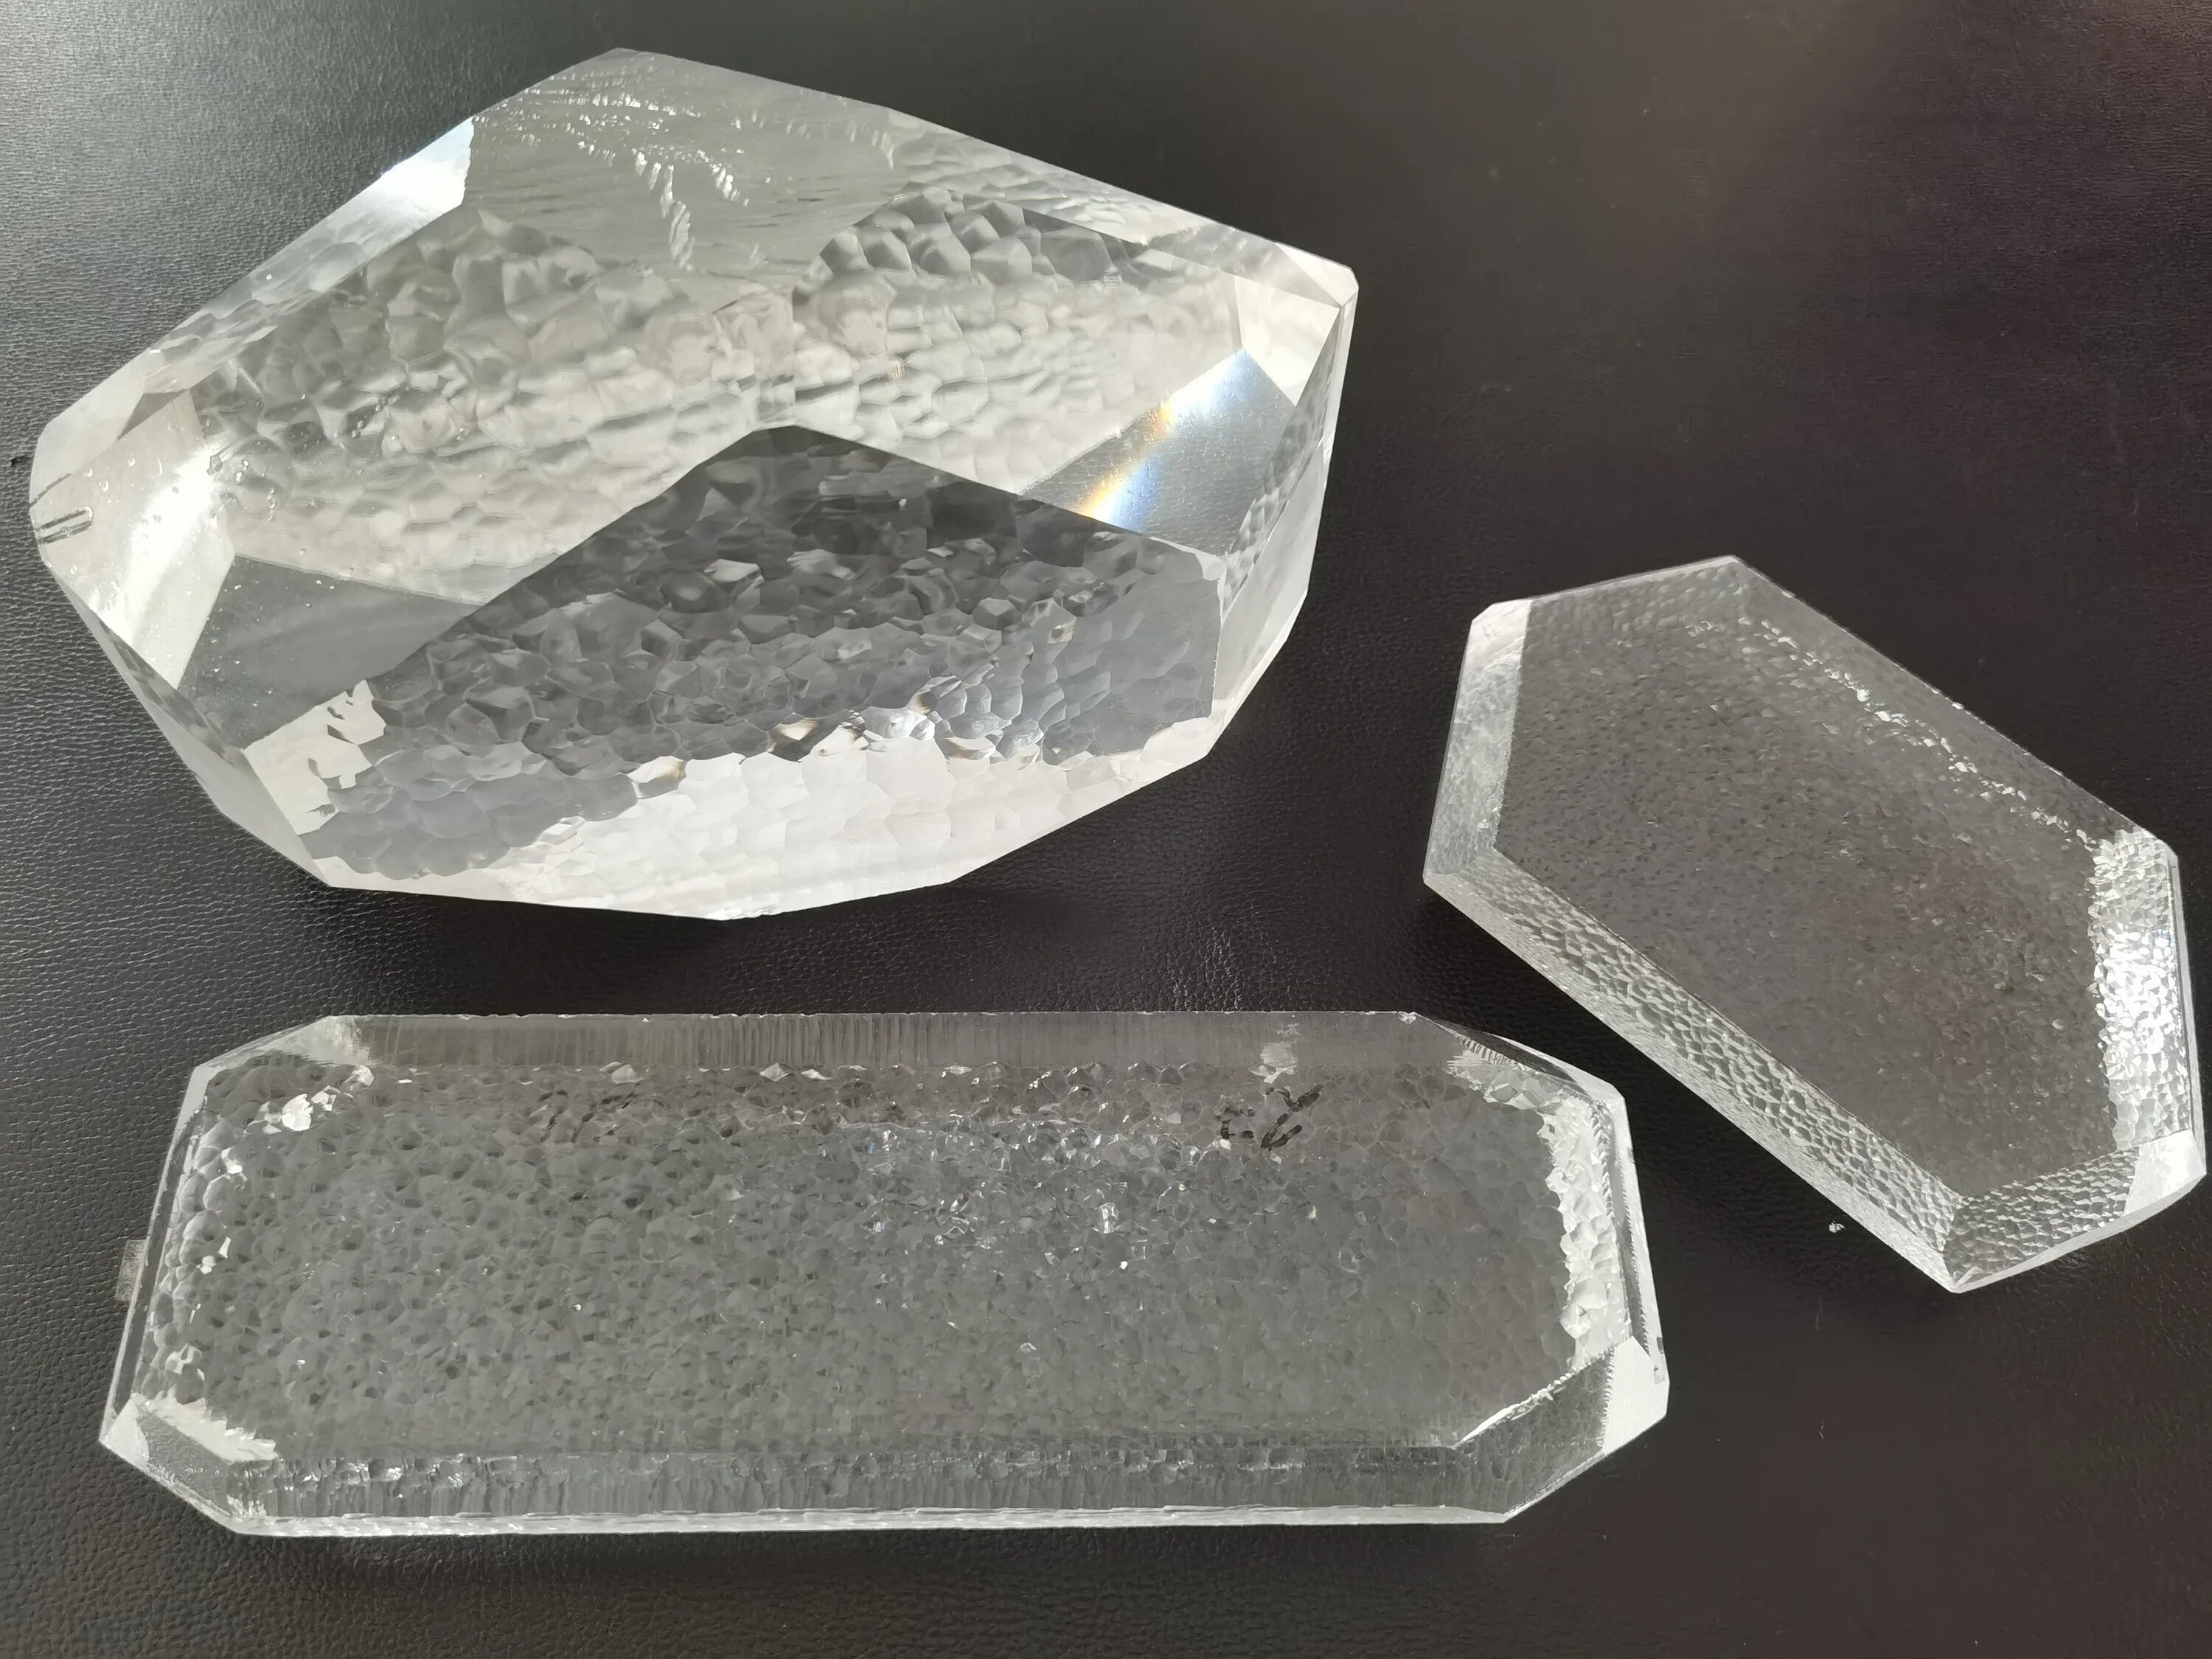 Монокристалл весом 1300 килограмм. Кристаллы кварц монокристалл. Кристалл кварца мнокристал. Монокристаллы Алмаз и кварц. Пластины монокристаллический кварц.